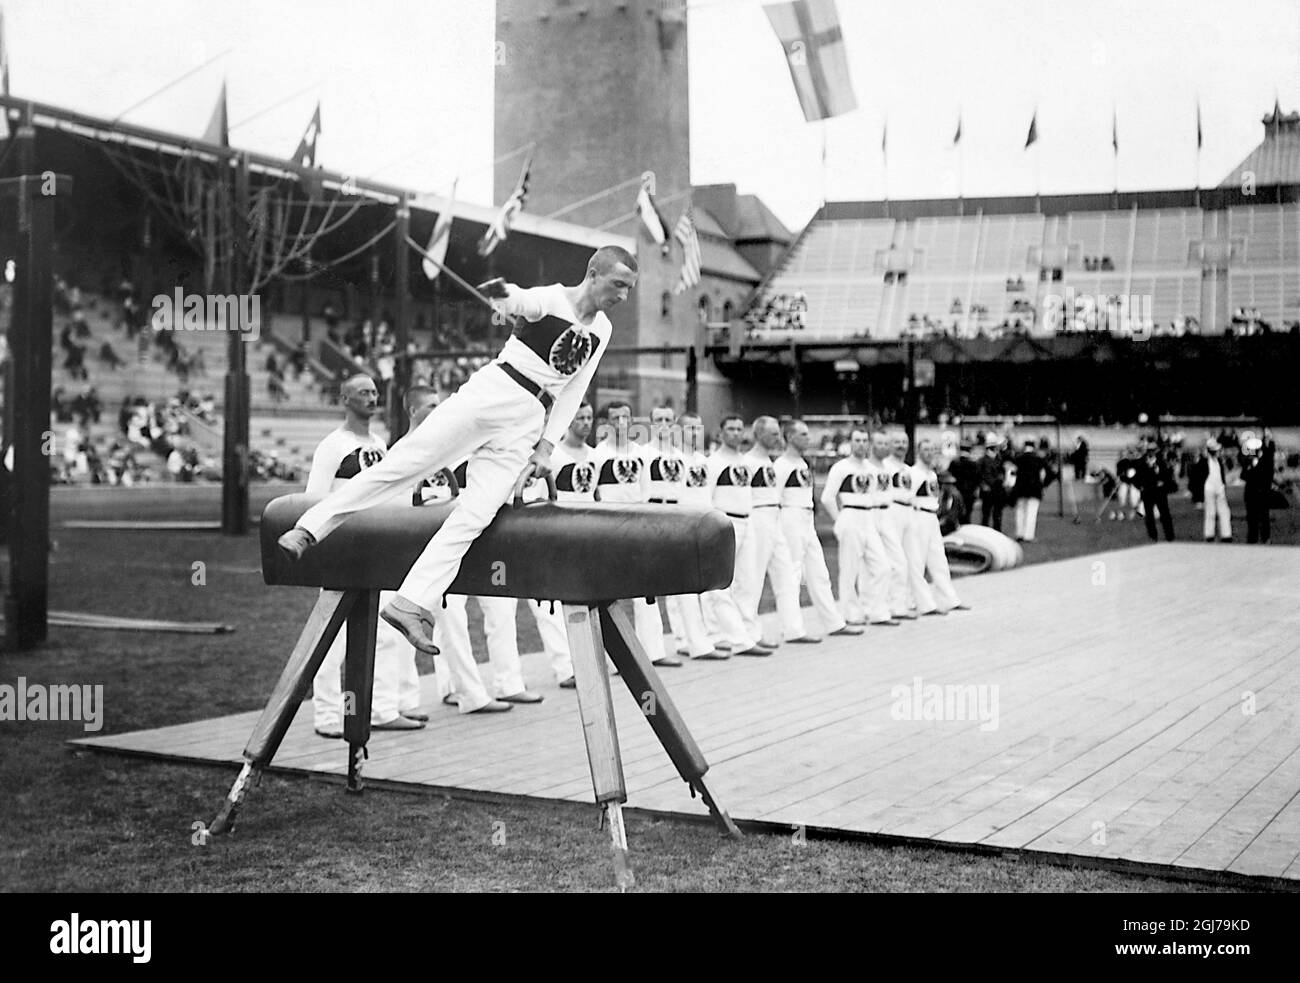 DATEI 1912 Deutscher Turner auf dem Pauschenpferd bei den olympischen spielen in Stockholm 1912. Foto:Scanpix Historical/ Kod:1900 Scanpix SCHWEDEN Stockfoto